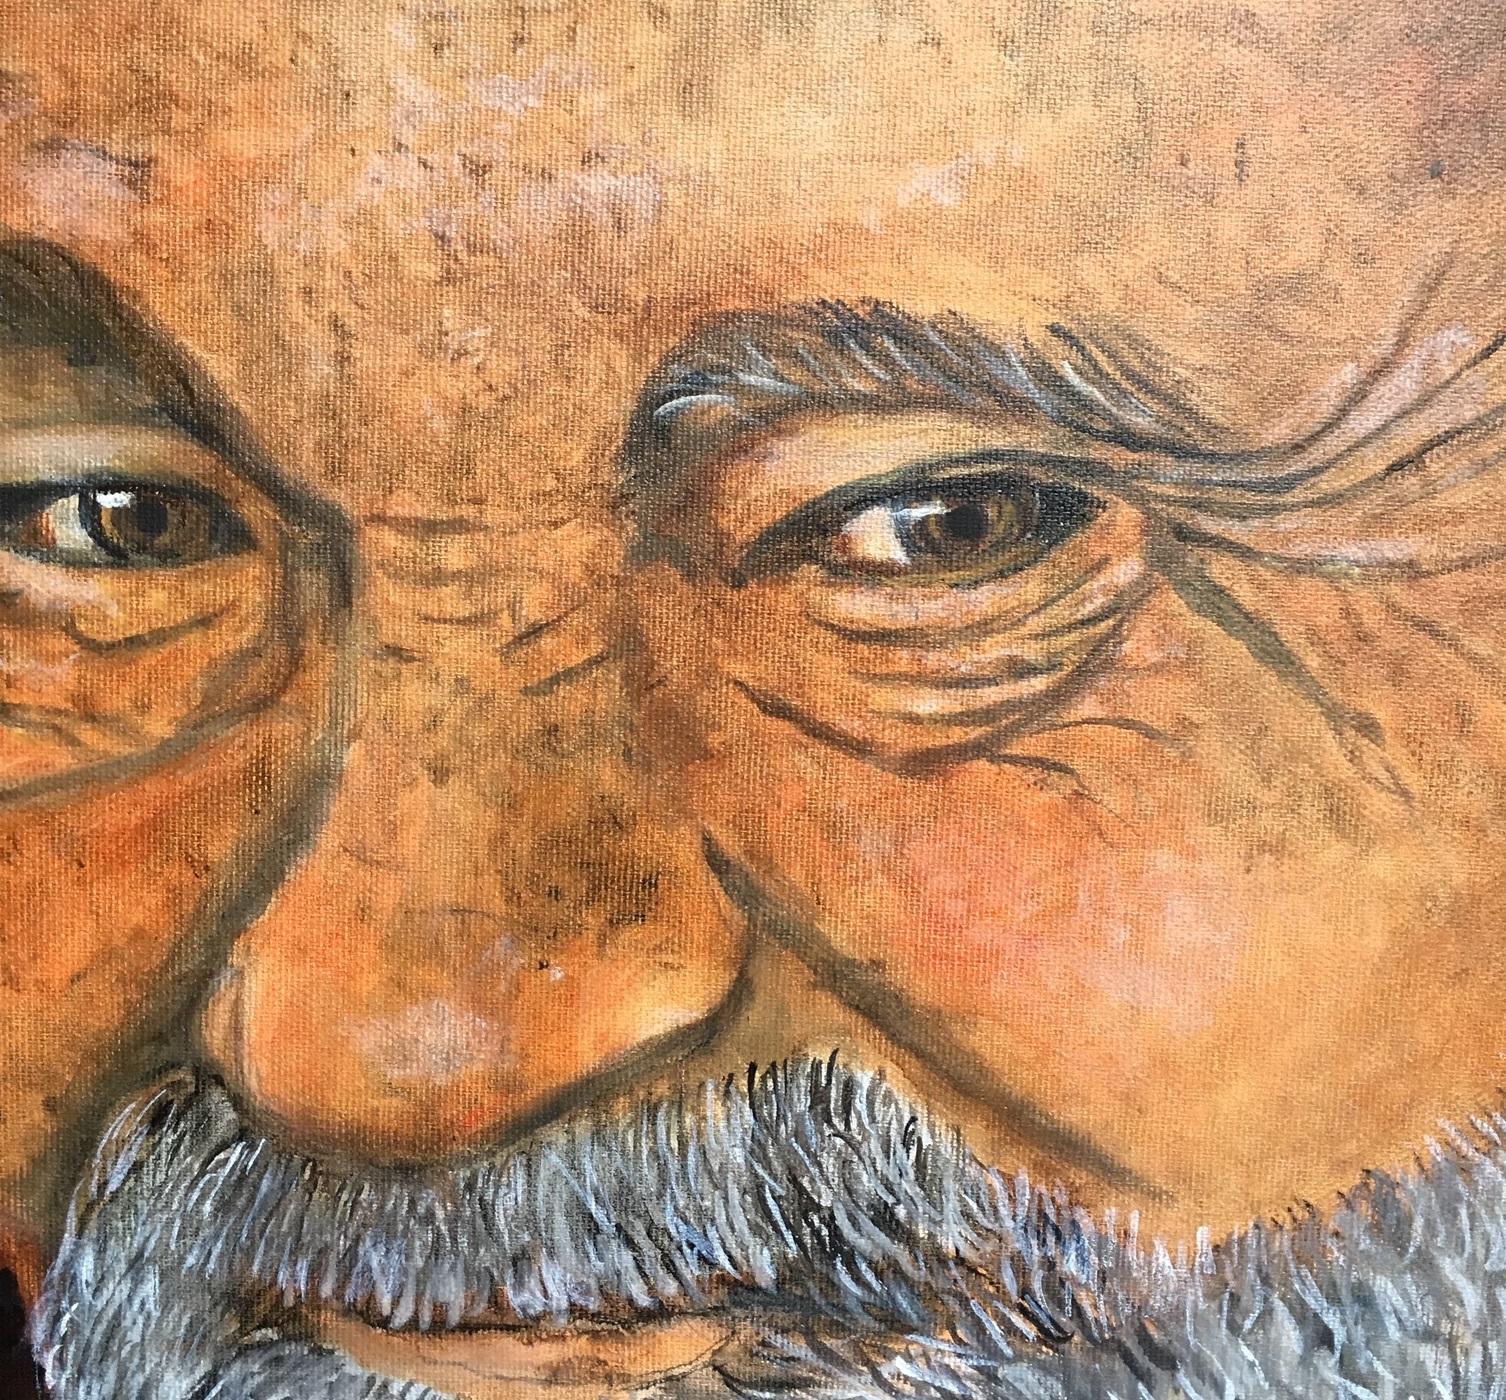 Peinture contemporaine, figurative et surréaliste à l'huile sur toile du peintre danois Bente Ørum, 2018.

Portrait d'un vieil homme satisfait 

À propos de l'artiste :
Les peintures de Bente Ørum sont figuratives, souvent avec un soupçon de